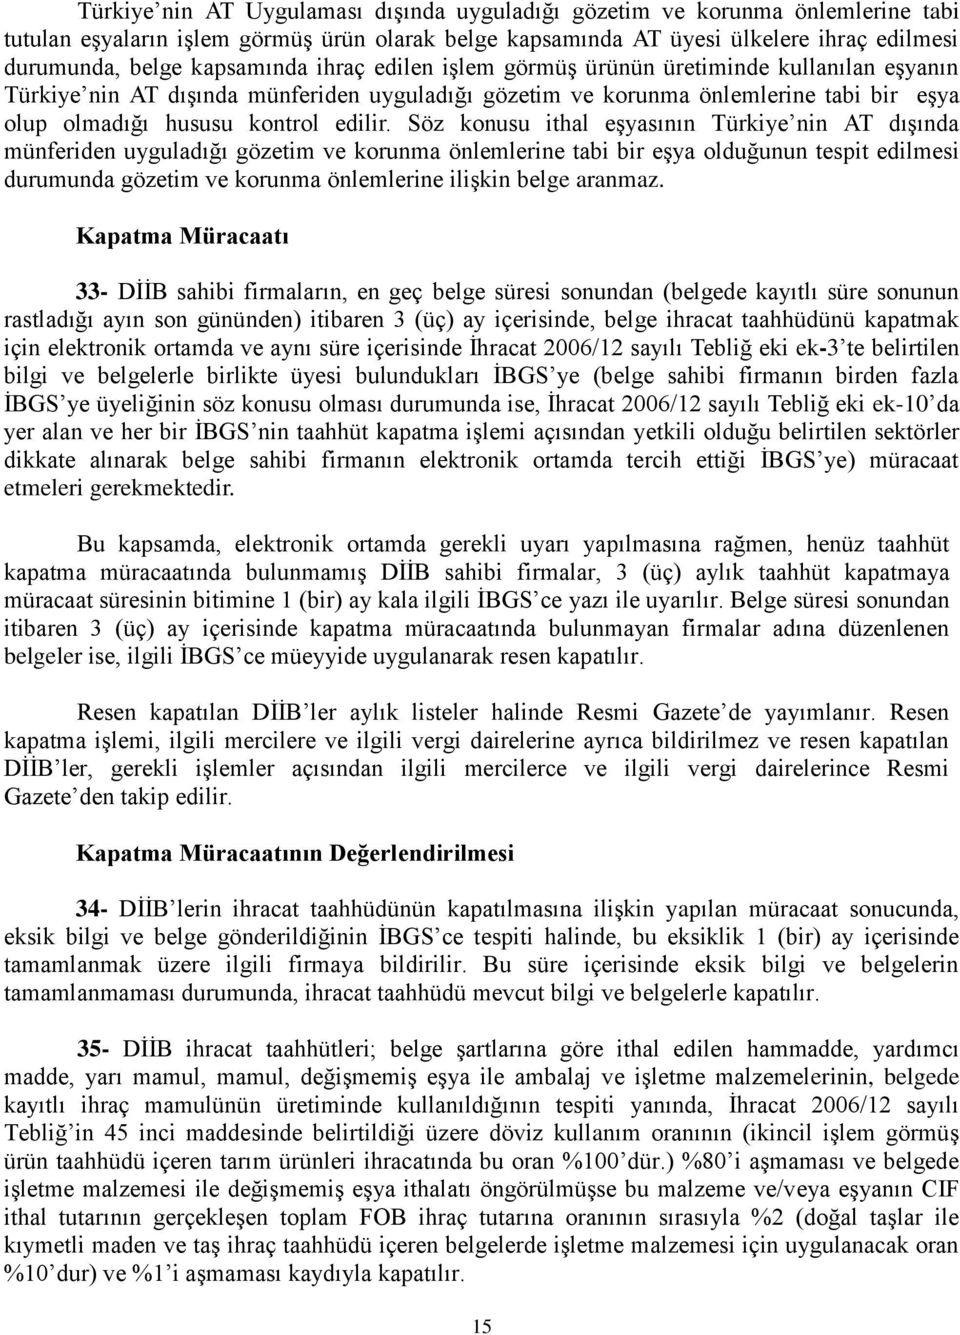 Söz konusu ithal eşyasının Türkiye nin AT dışında münferiden uyguladığı gözetim ve korunma önlemlerine tabi bir eşya olduğunun tespit edilmesi durumunda gözetim ve korunma önlemlerine ilişkin belge